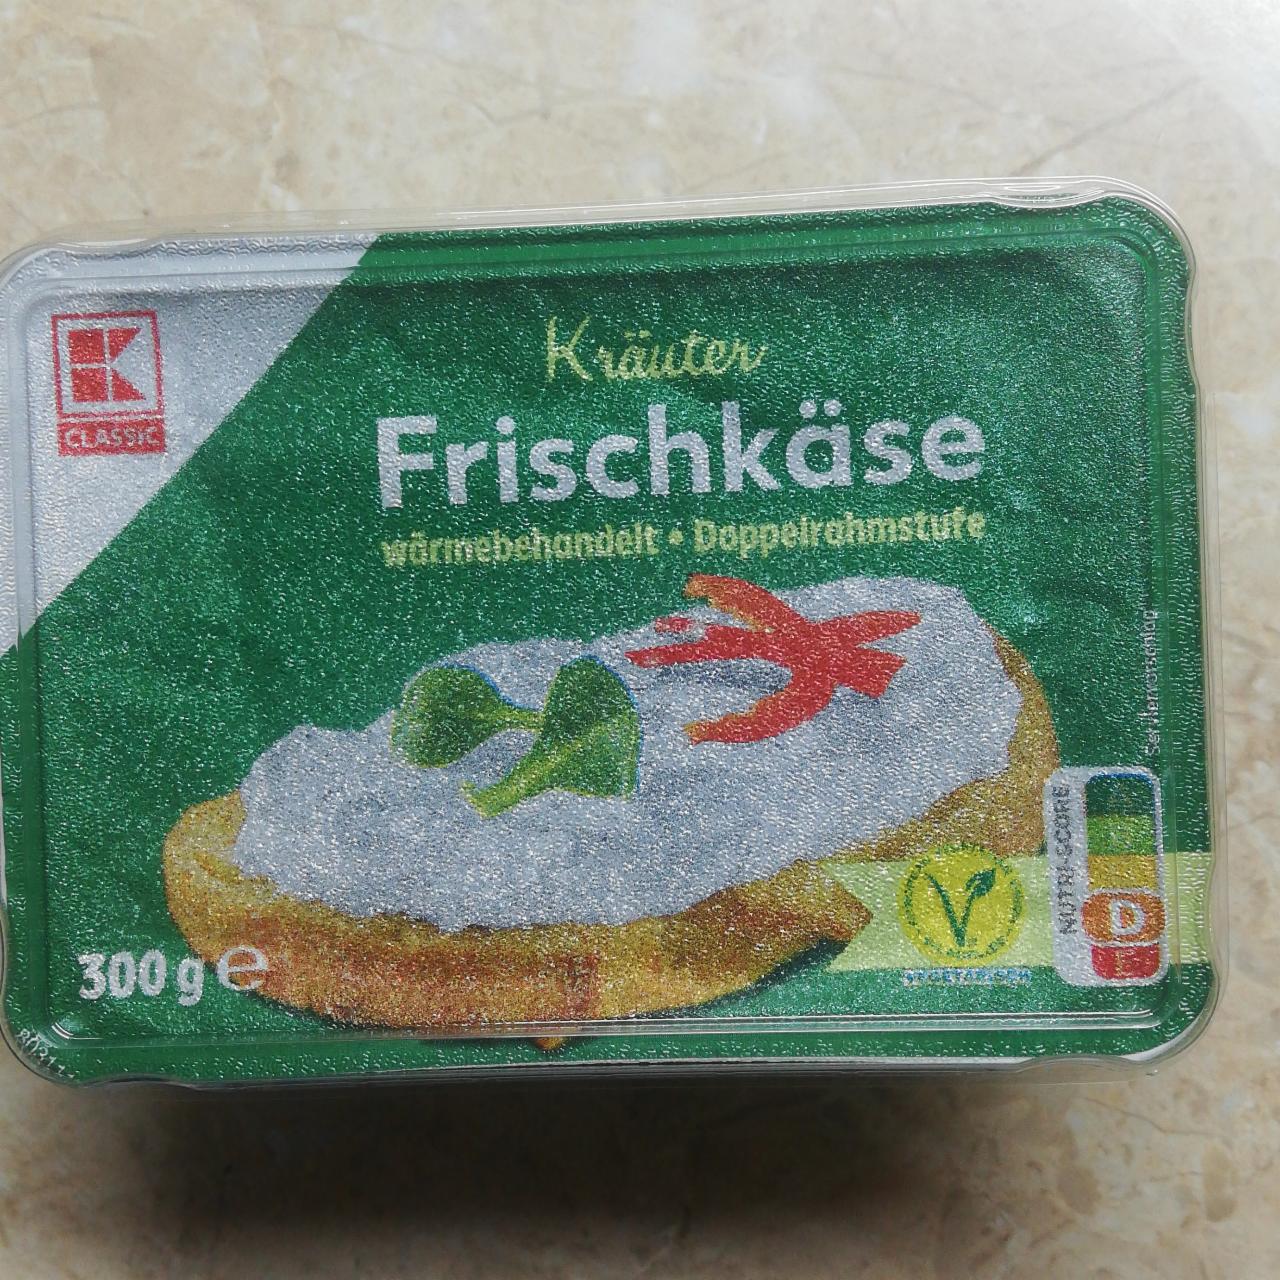 Fotografie - Kräuter Frischkäse wärmebehandelt K-Classic